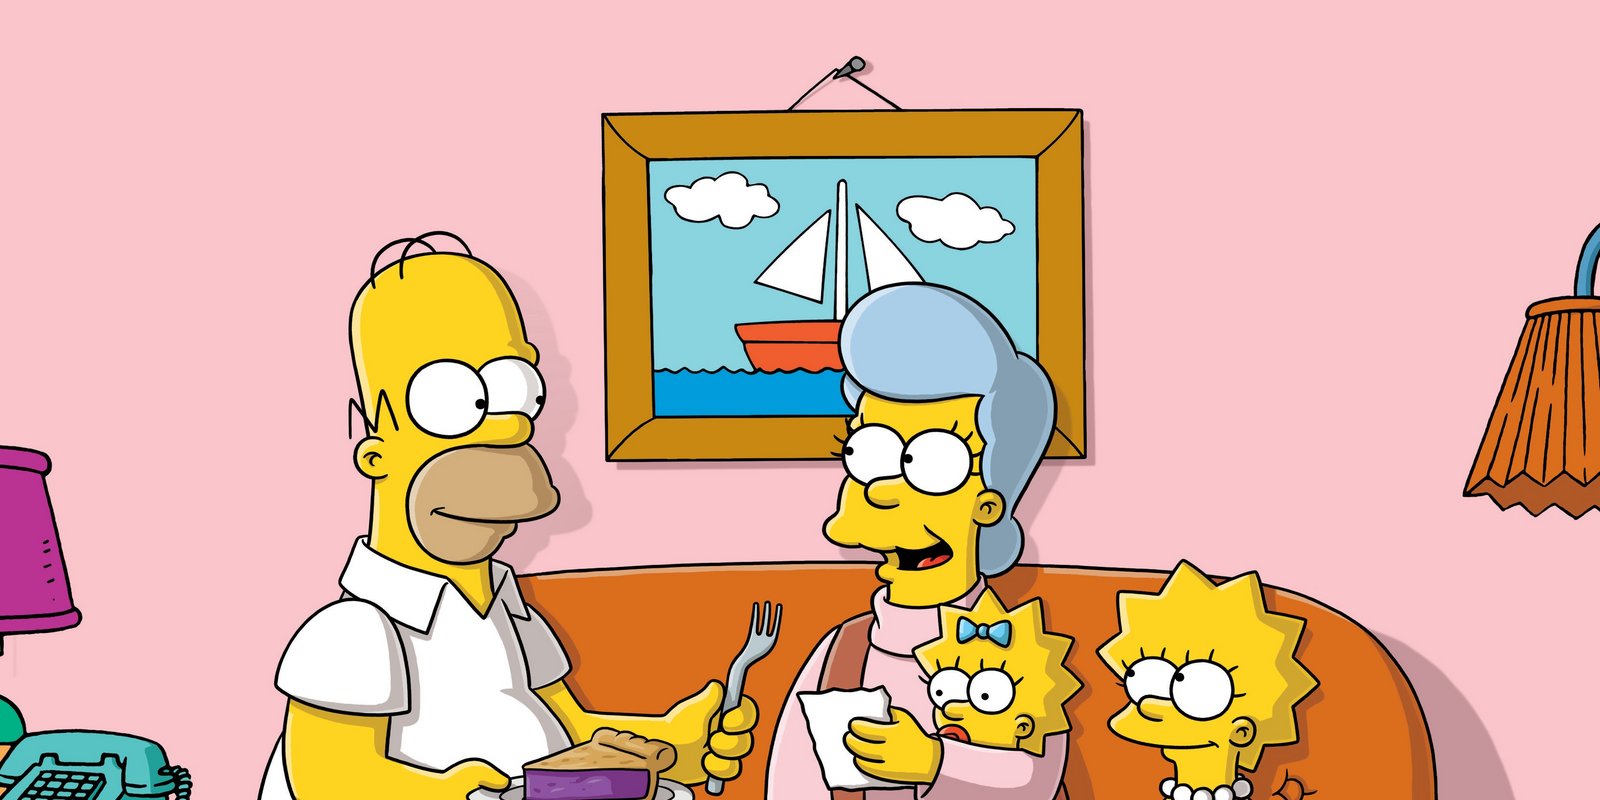 Die Simpsons - Staffel 19